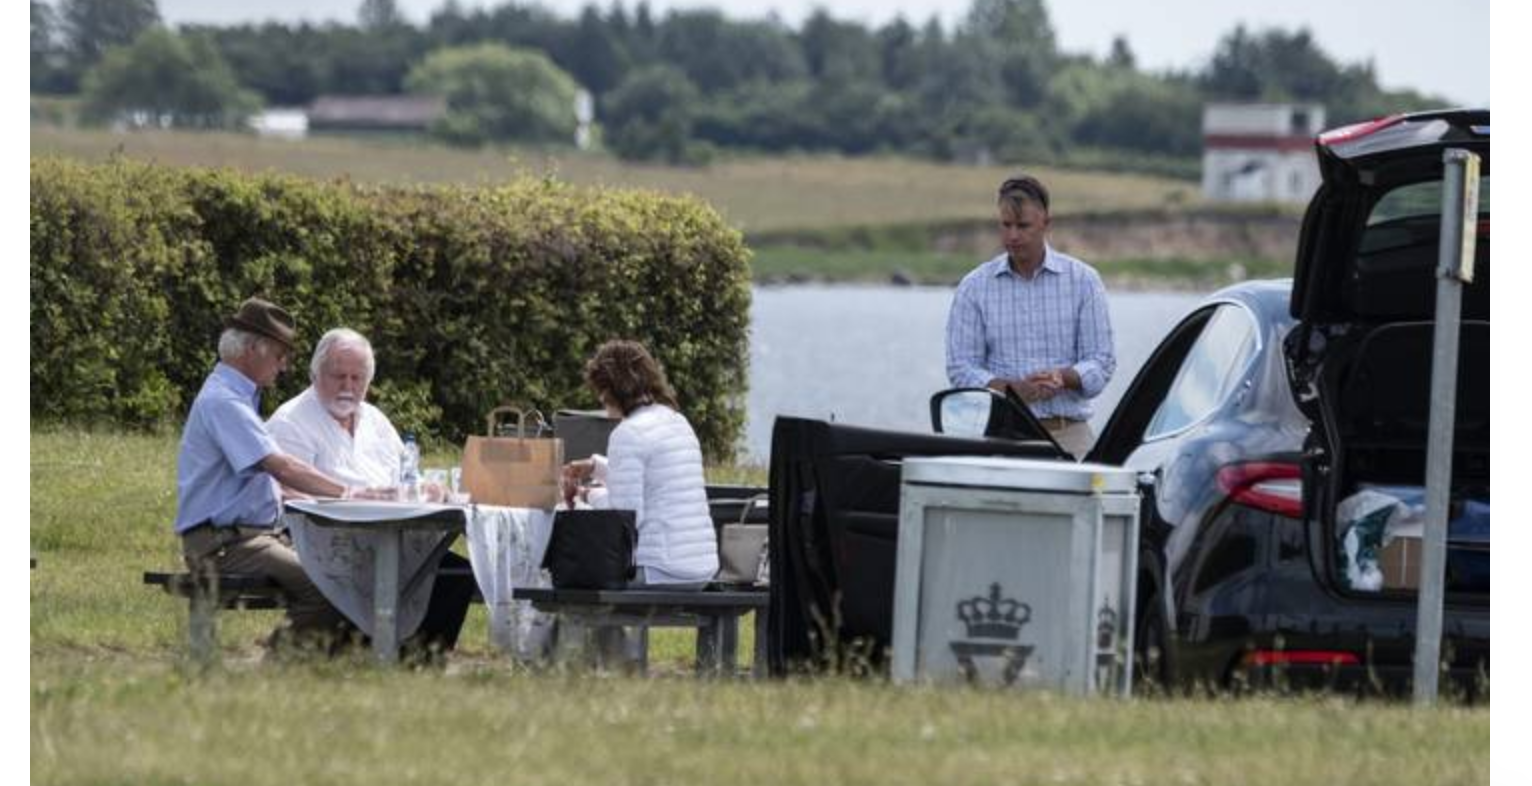 Король Швеции остановился на пикник в Дании и привлек внимание СМИ